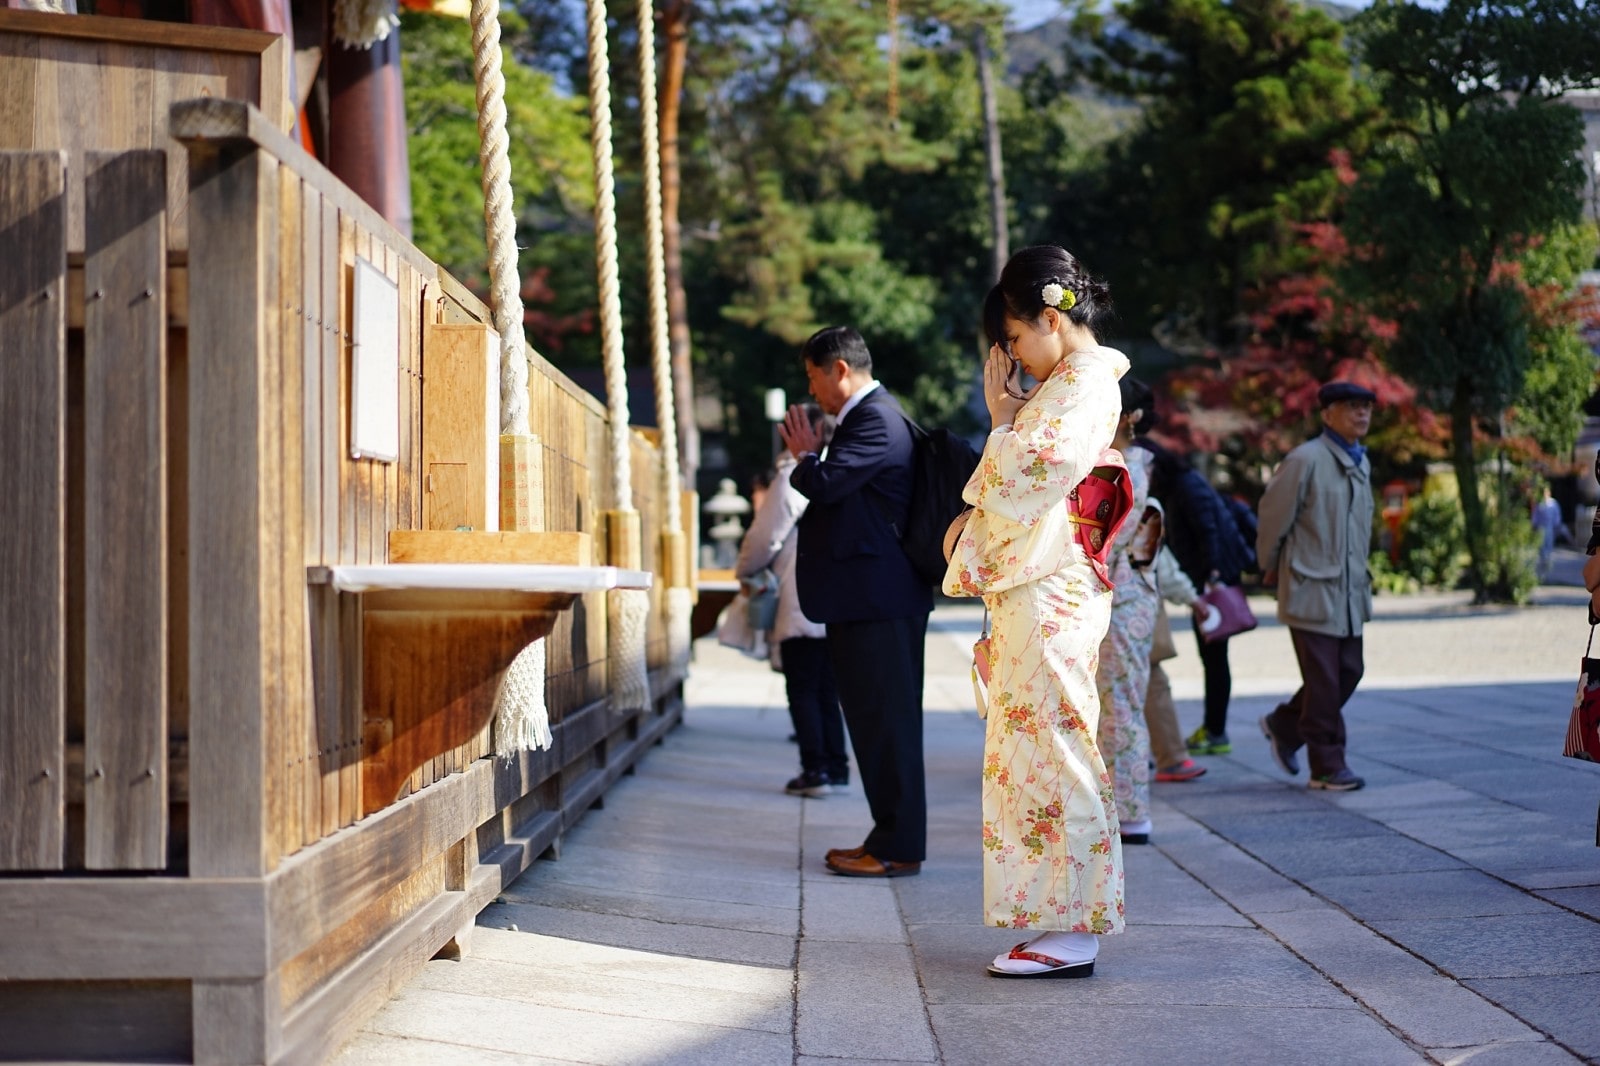 etiquette shrine japan